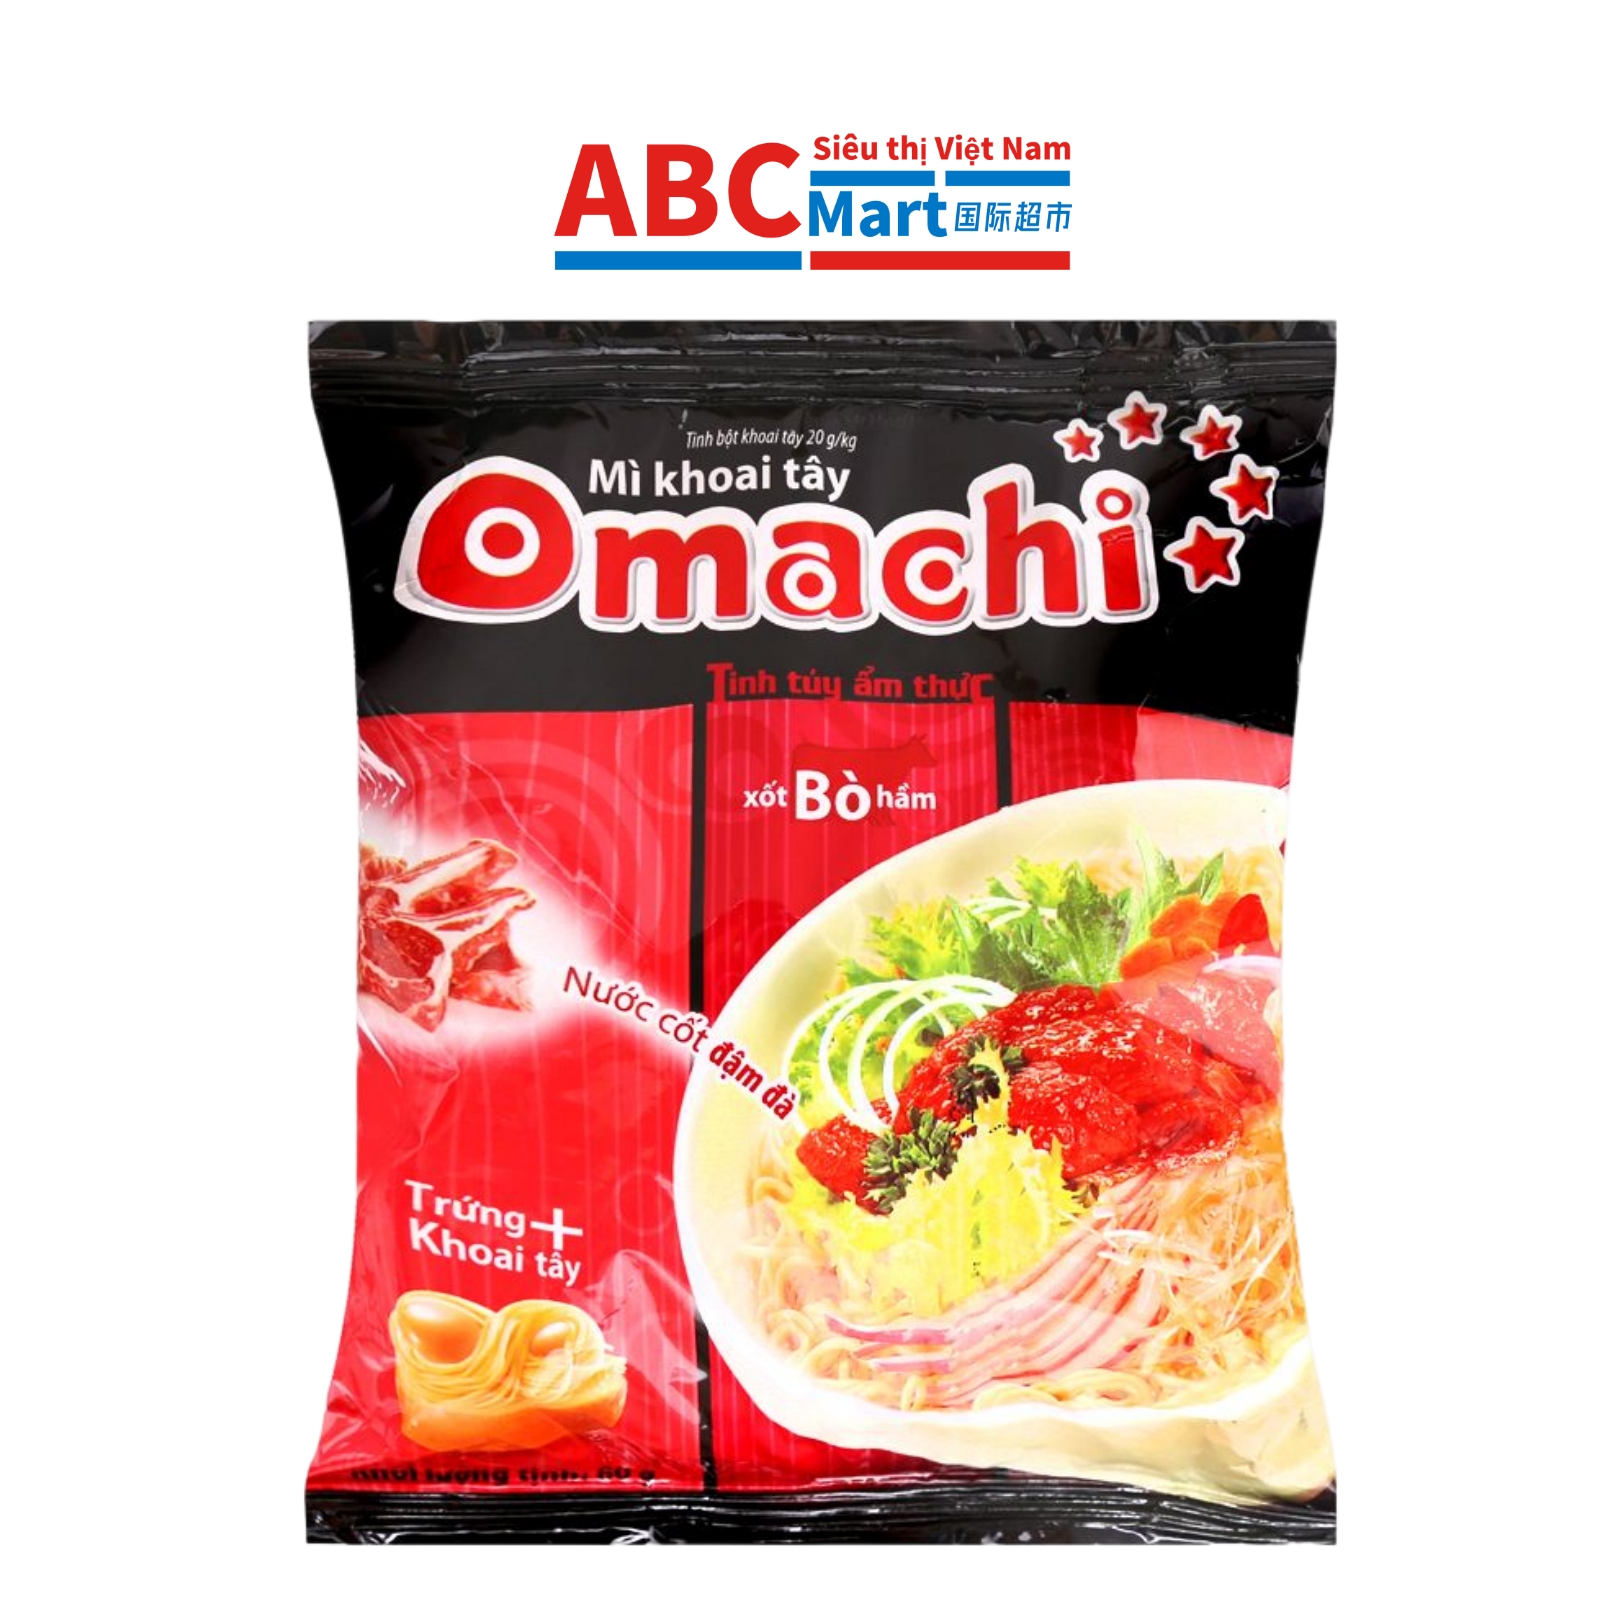 【Việt Nam-Mì dinh dưỡng khoai tây Omachi xốt bò hầm mới 80g】大町红烧牛肉面-ABCMart 国际超市